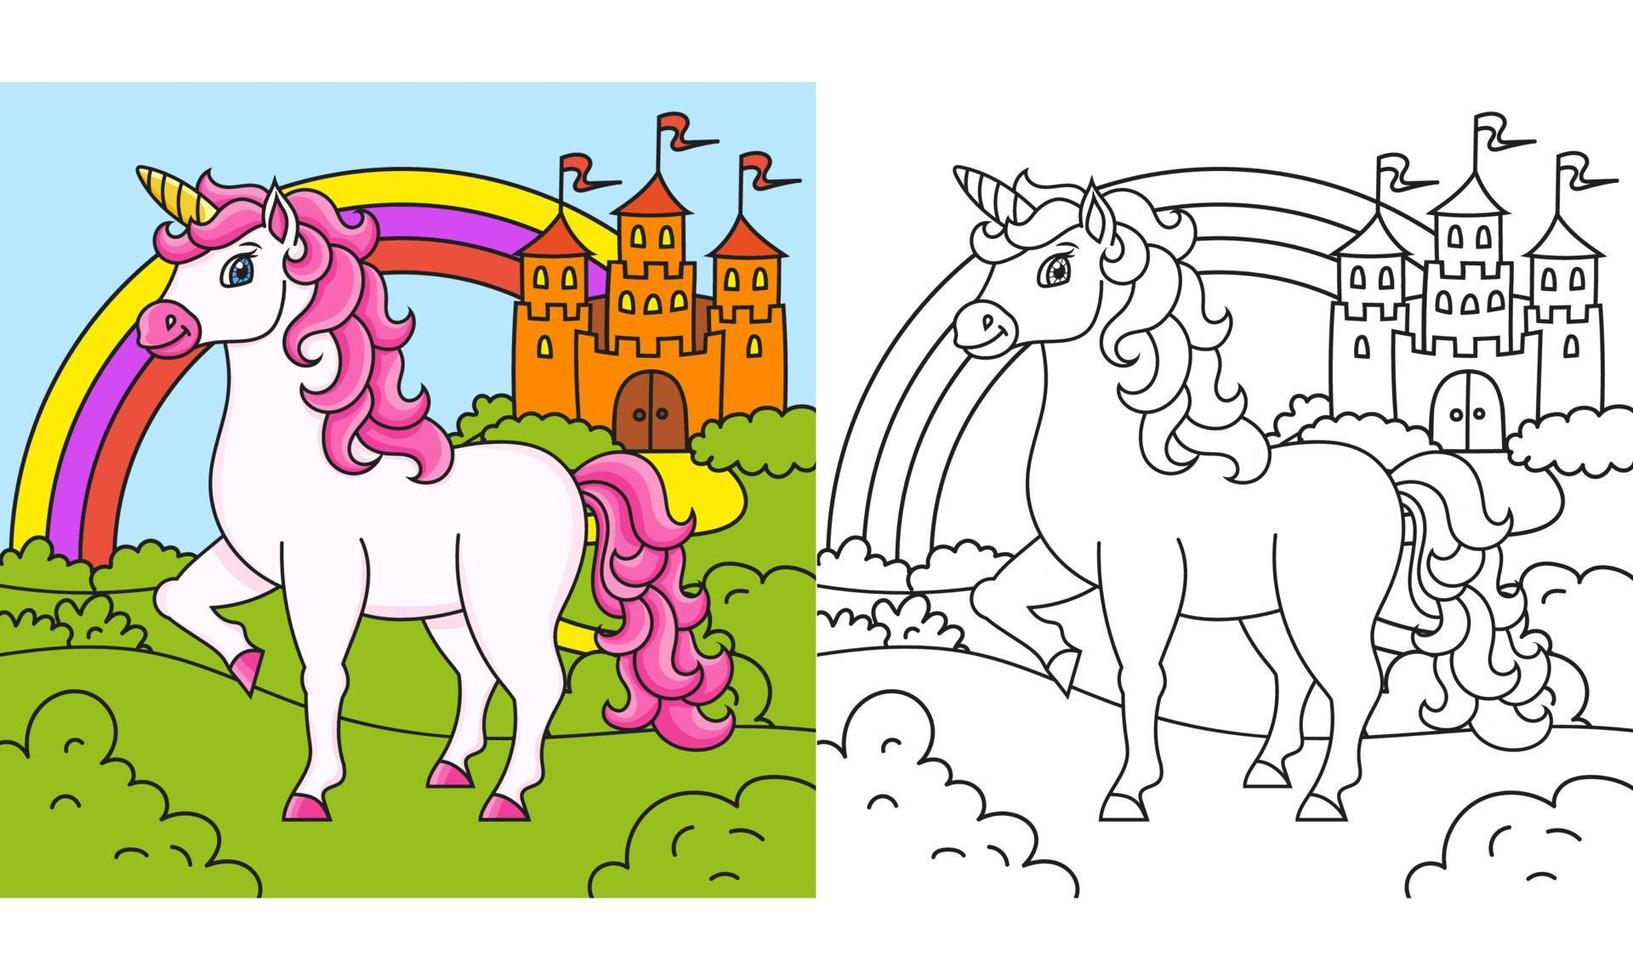 jolie licorne. cheval de fée magique. page de livre de coloriage pour les enfants. style de bande dessinée. illustration vectorielle isolée sur fond blanc. vecteur